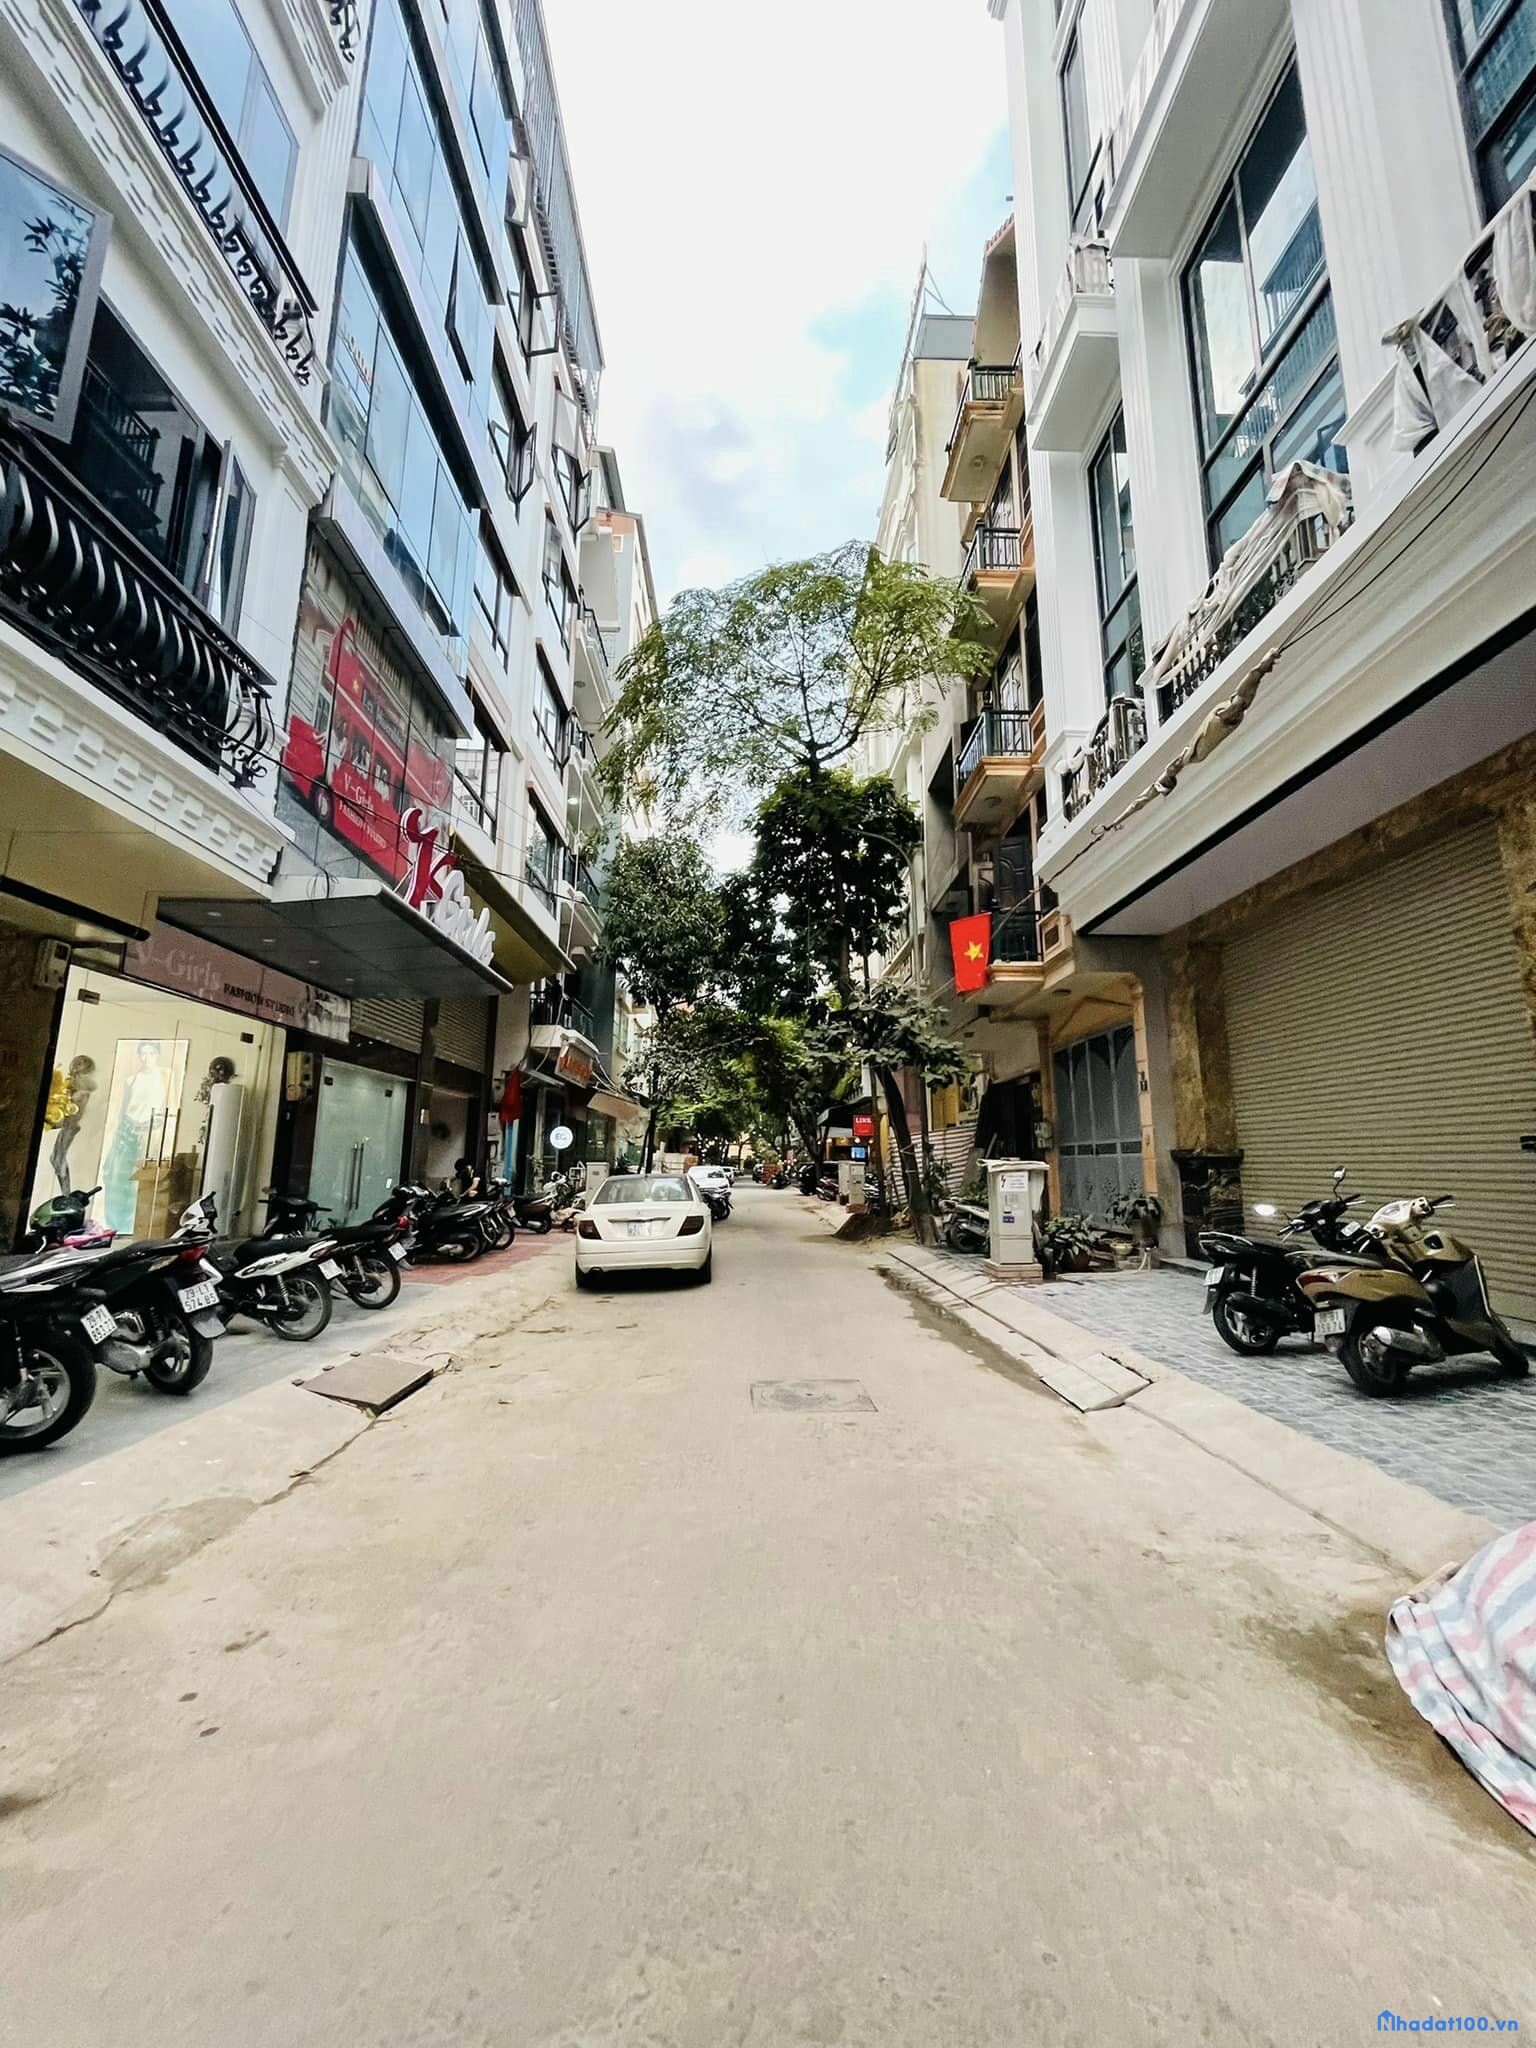 Bán nhà Nguyễn Hoàng mặt đường thang máy, có hầm gửi xe, mặt tiền khủng, kinh doanh sầm uất